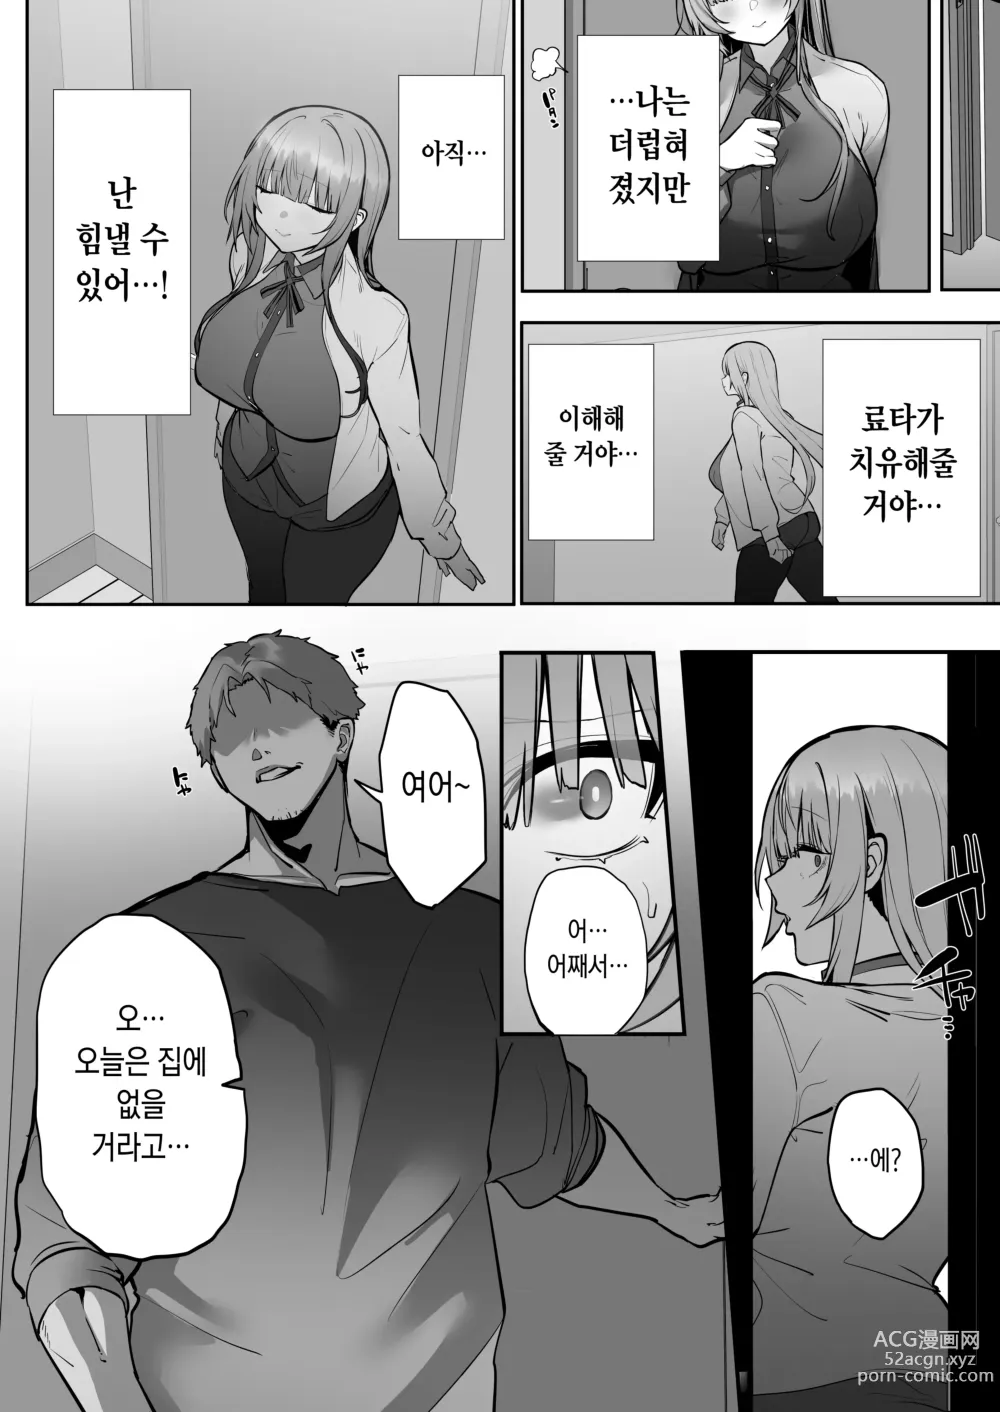 Page 51 of doujinshi Ani ni Netorare Ochita Tsubaki｜양오빠에게 빼앗겨 타락한 츠바키